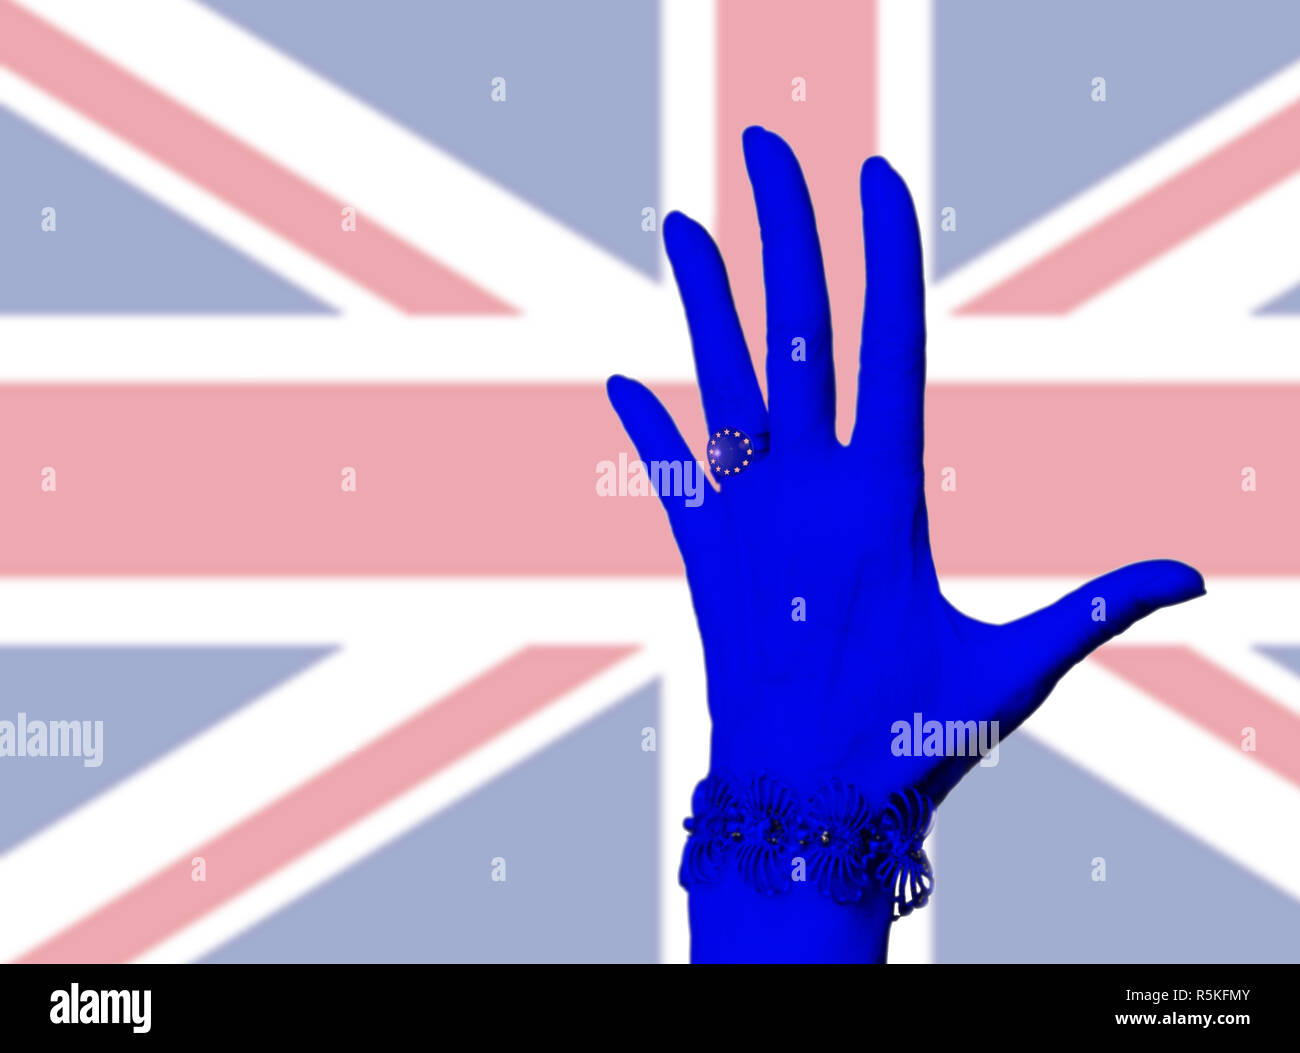 Eine Hand der Frau trägt einen Ring mit dem Symbol der Europäischen Union. Blaue Hand auf die britische Flagge im Hintergrund. Stockfoto